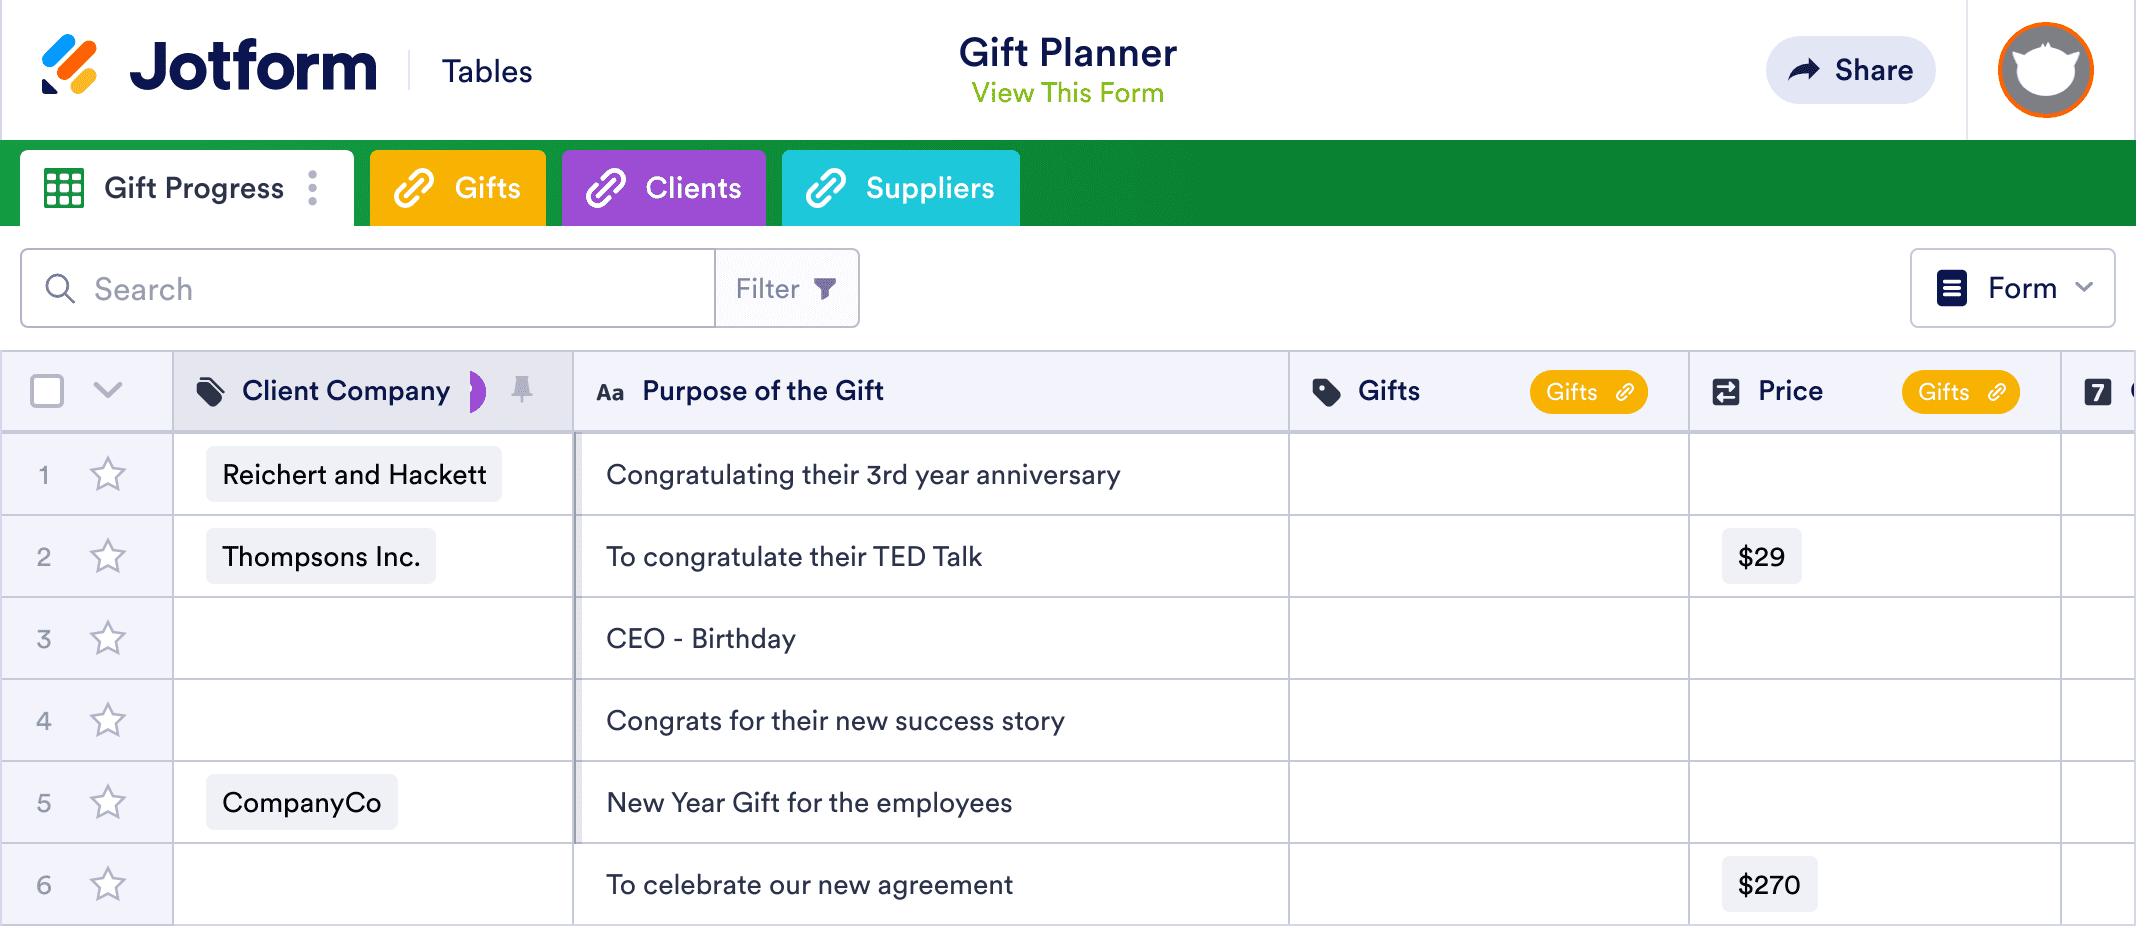 Gift Planner